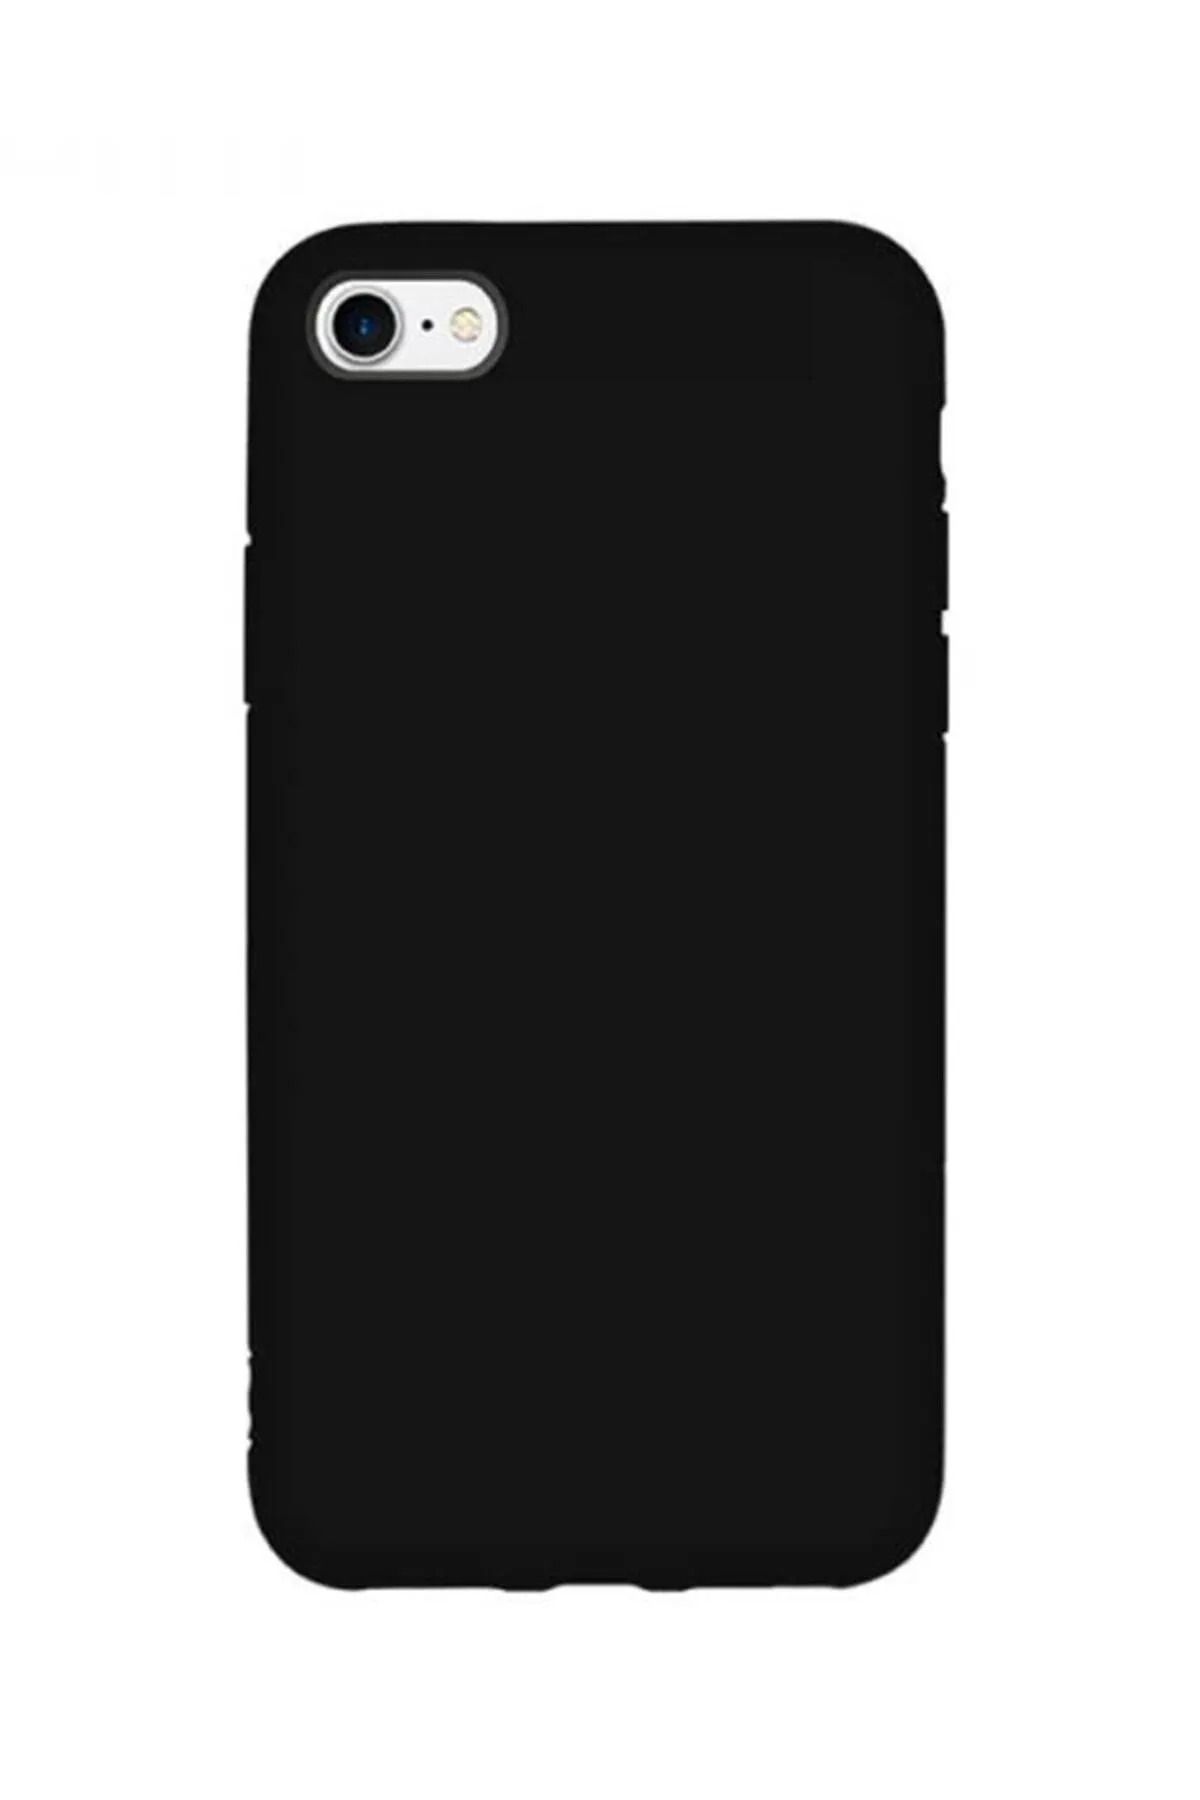 KVK PRİVACY Iphone 7 / 8 / Se 2020 Uyumlu Içi Kadife Lansman Silikon Kılıf Kapak Siyah